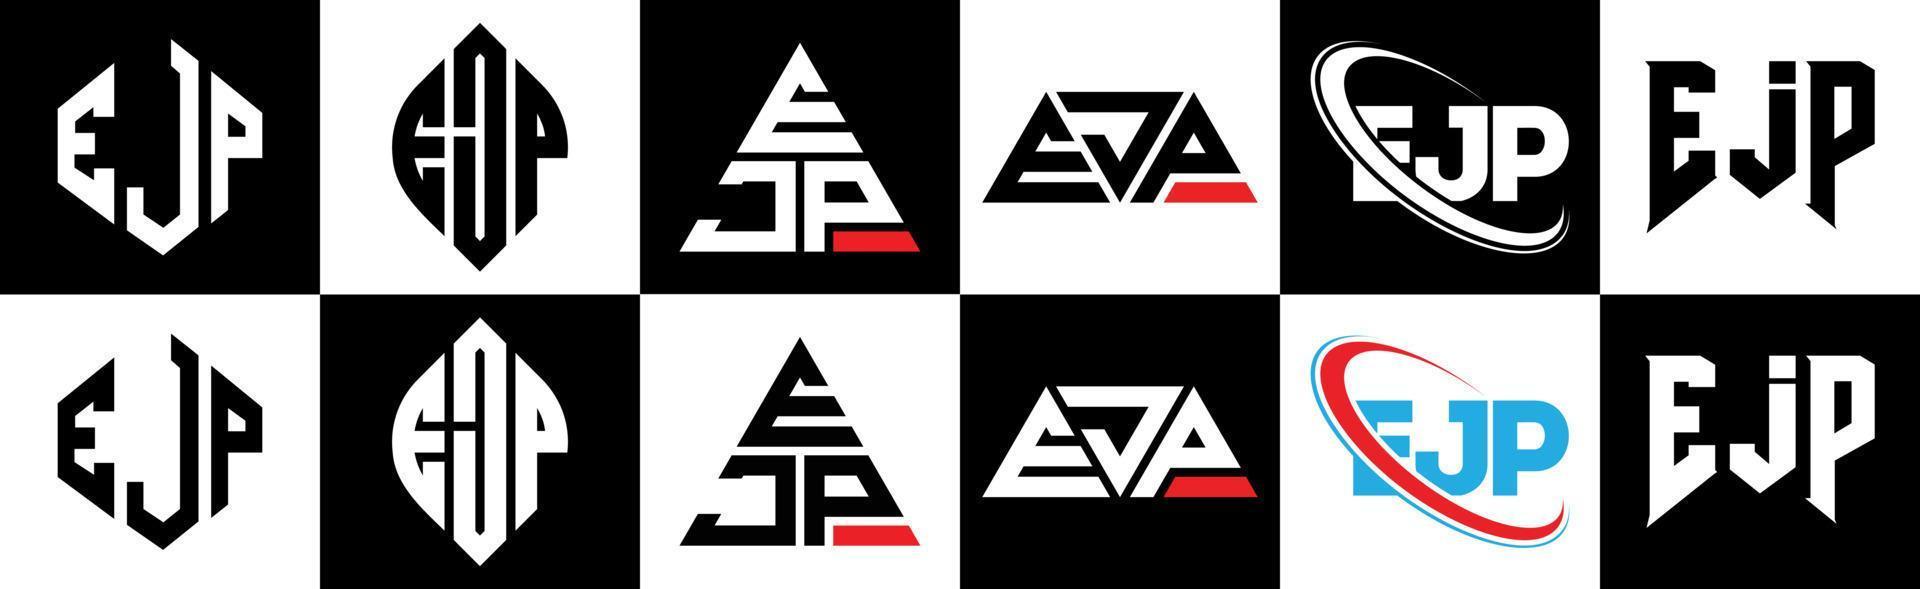 ejp-Buchstaben-Logo-Design in sechs Stilen. ejp polygon, kreis, dreieck, hexagon, flacher und einfacher stil mit schwarz-weißem farbvariationsbuchstabenlogo in einer zeichenfläche. ejp minimalistisches und klassisches Logo vektor